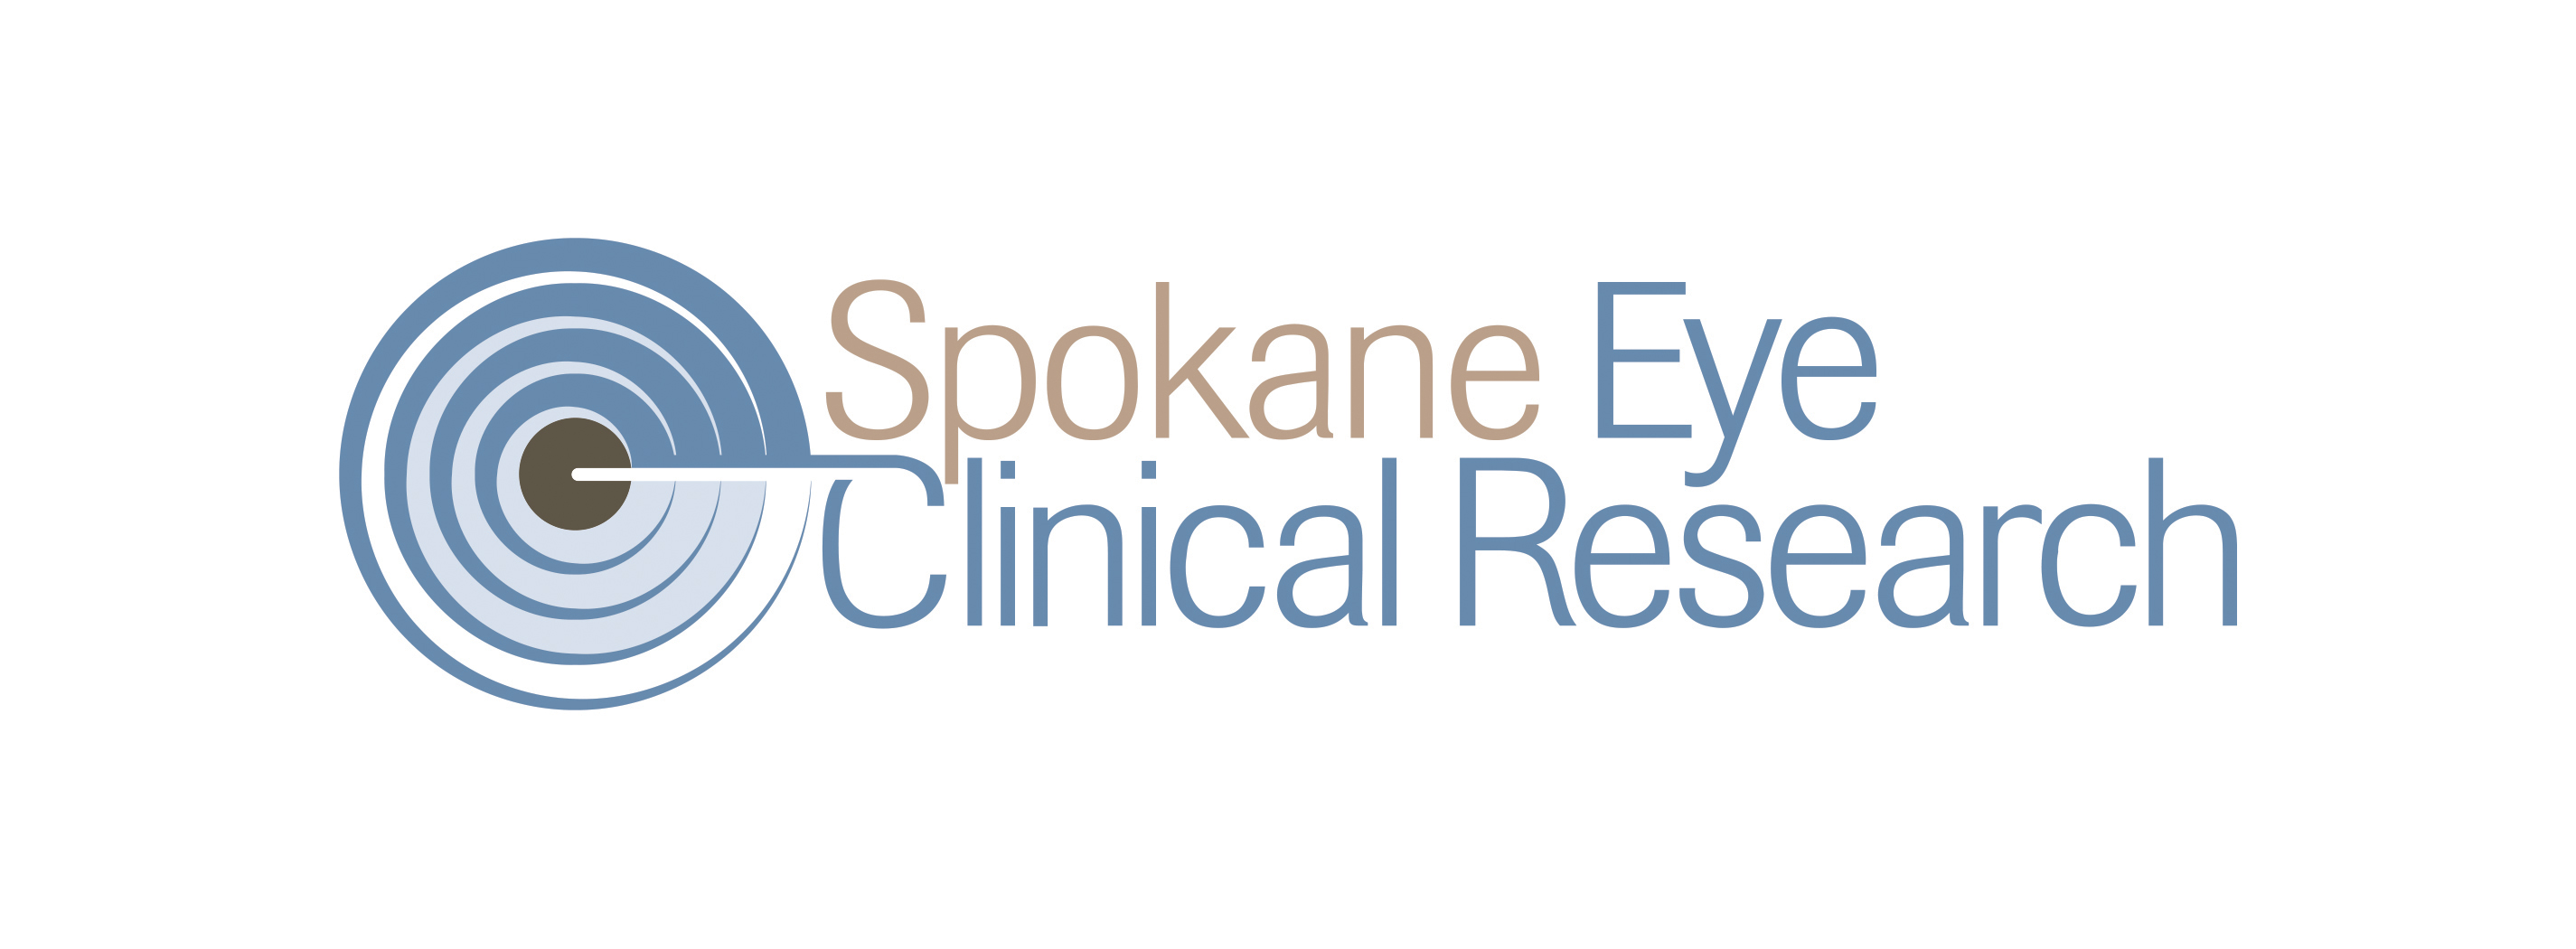 Spokane Eye Clinical Research